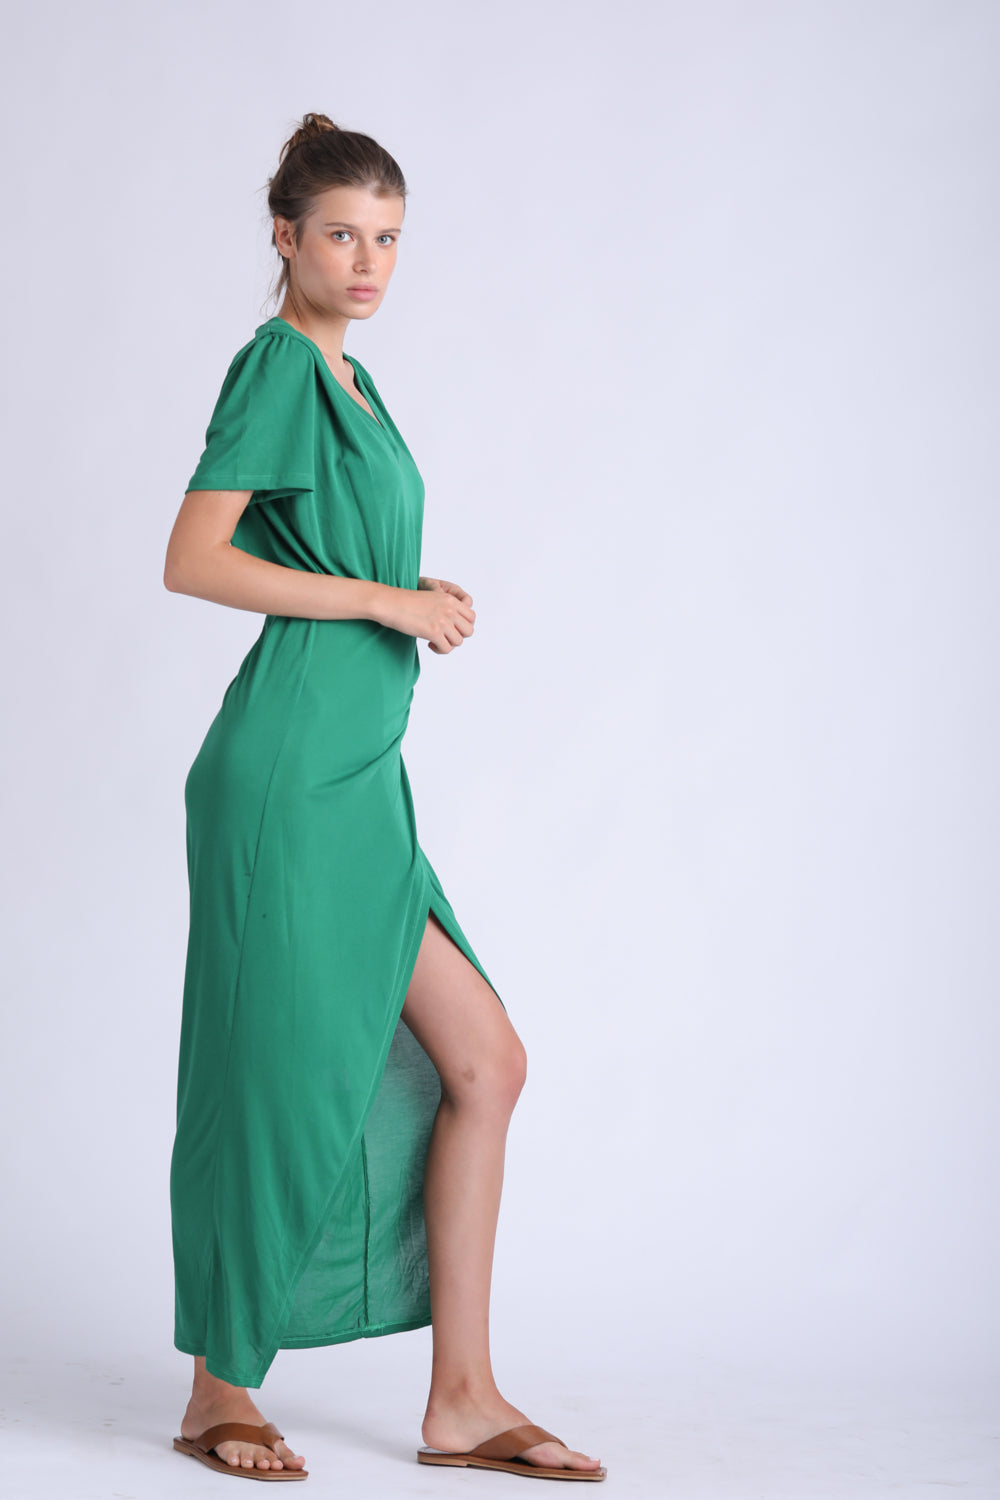 Bonding Green Dress